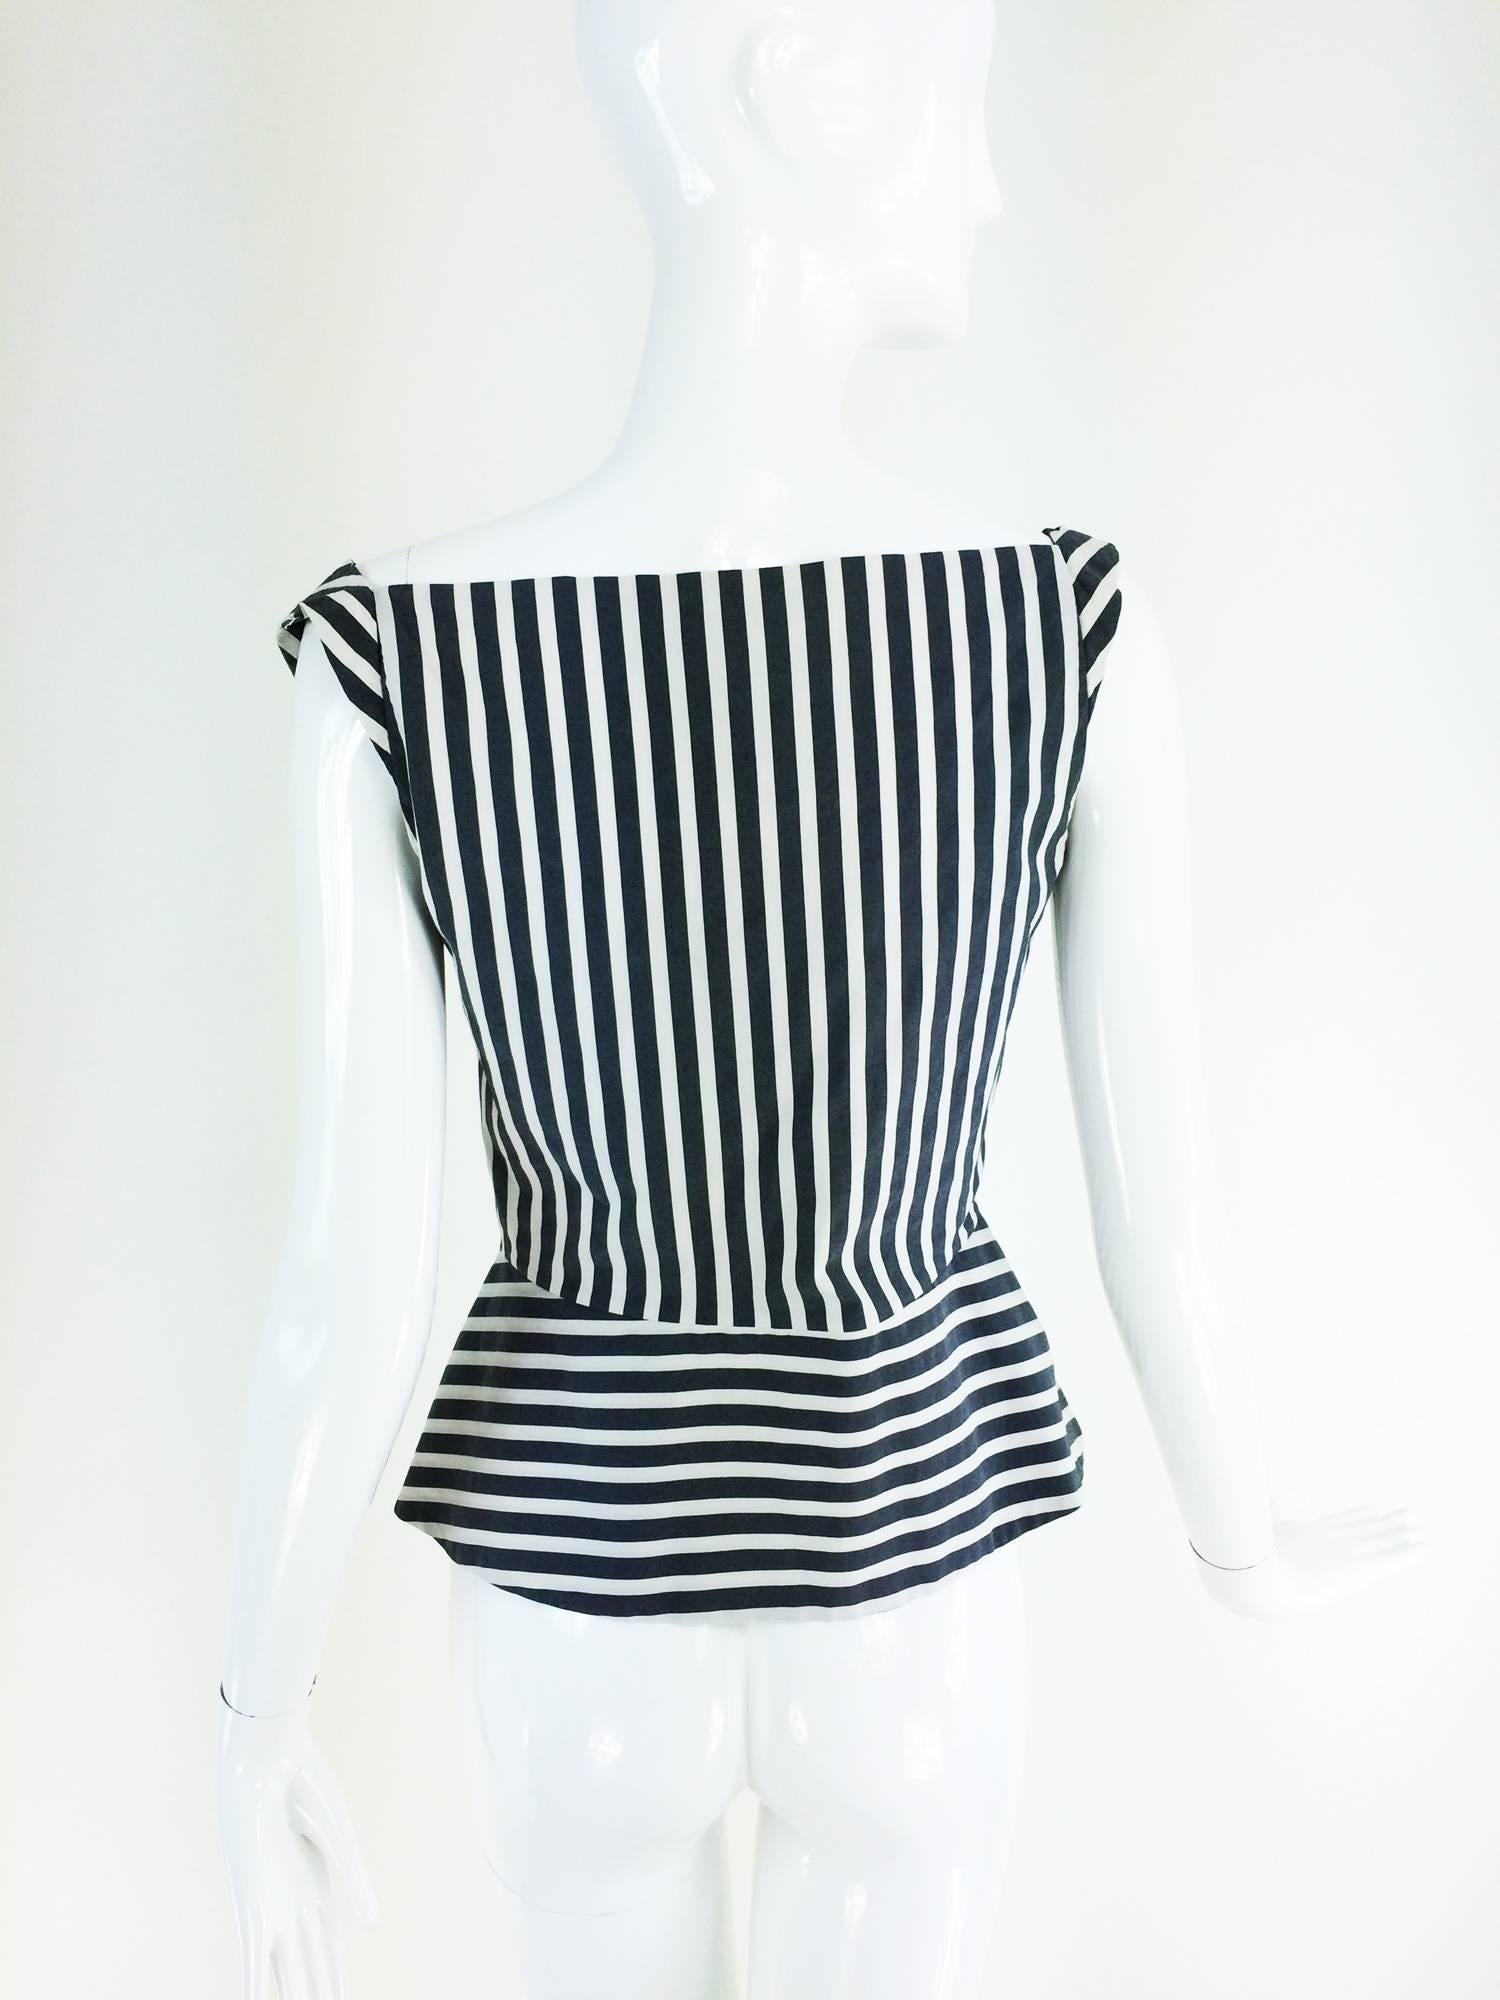 black and white striped corset